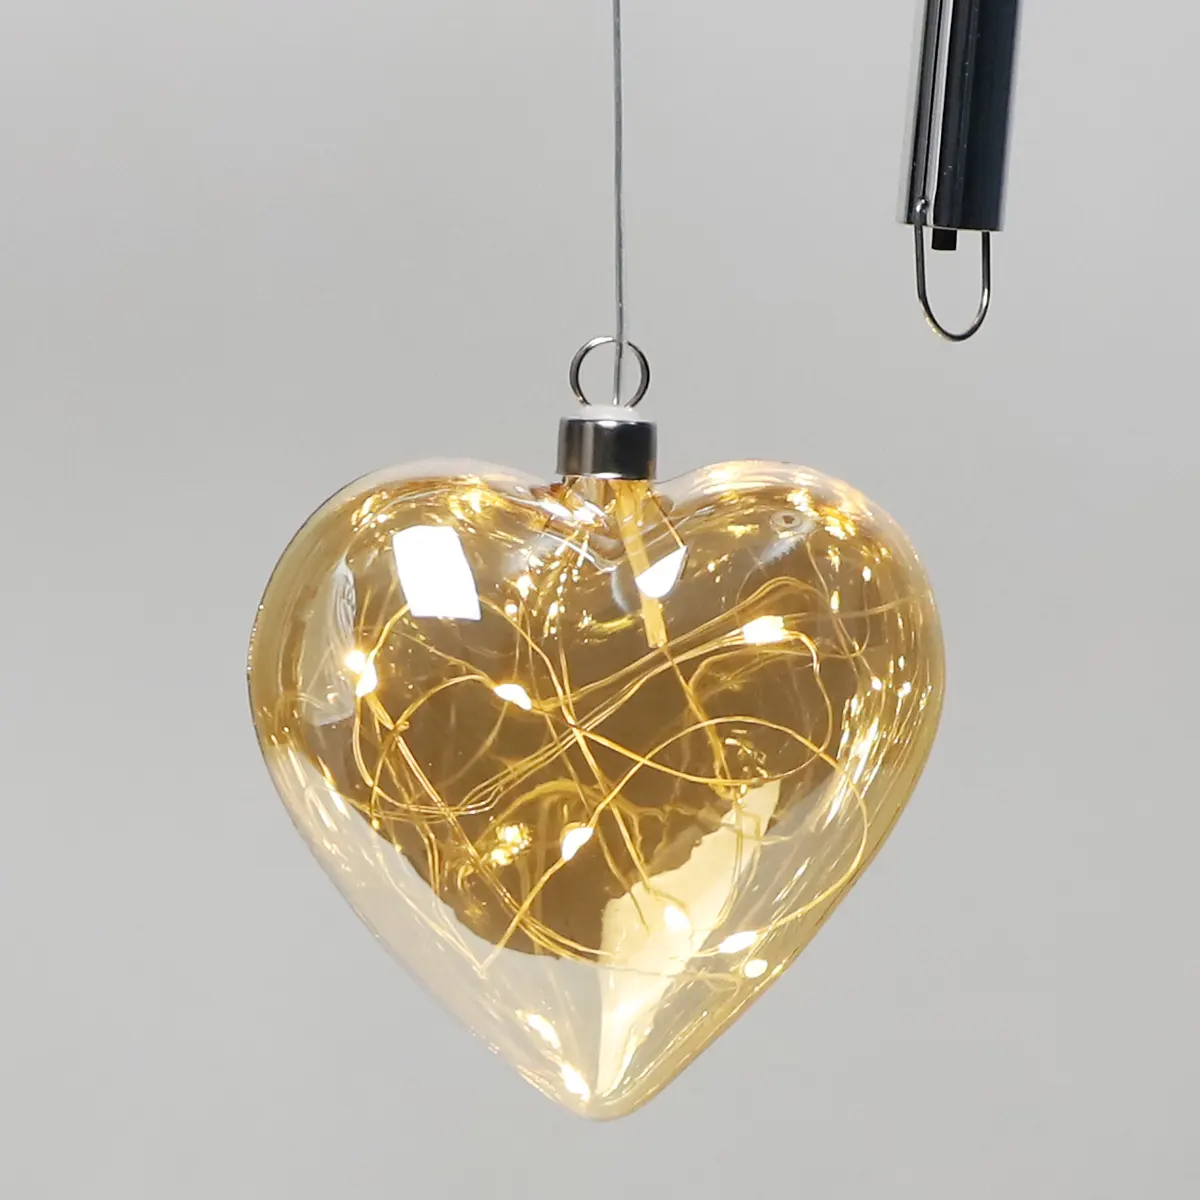 Satılık noel ev dekorasyonu kalp şekli cam aydınlatma asılı top